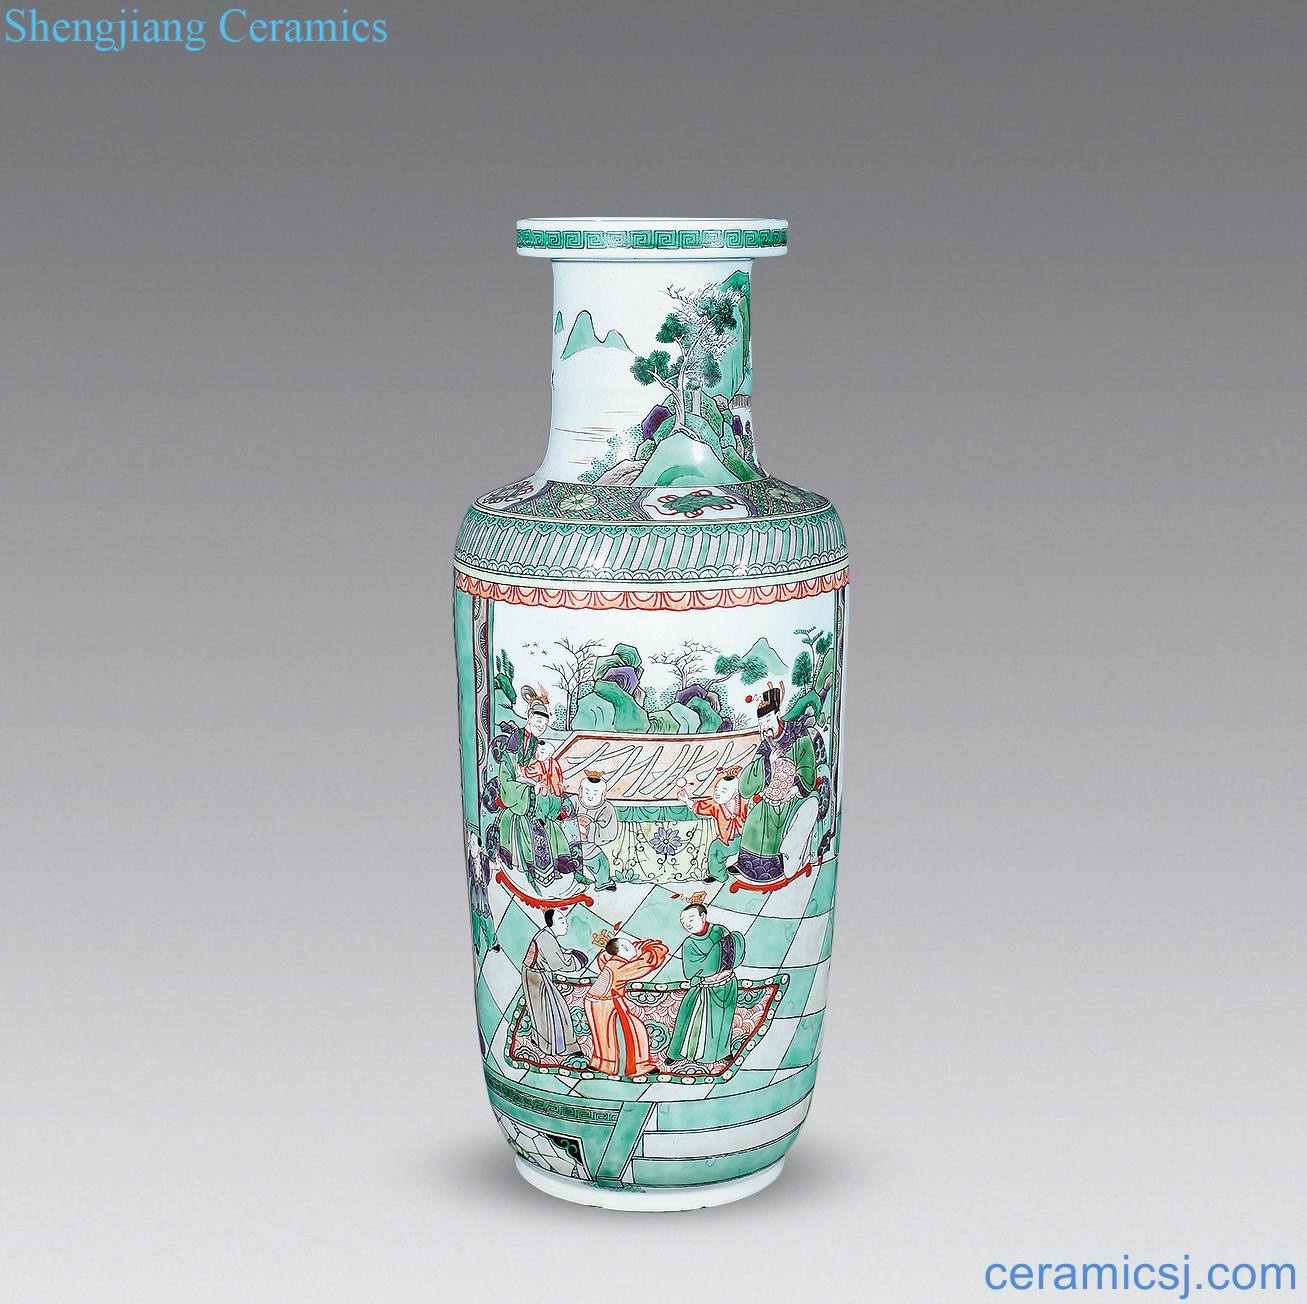 Qing guangxu Colorful figures show